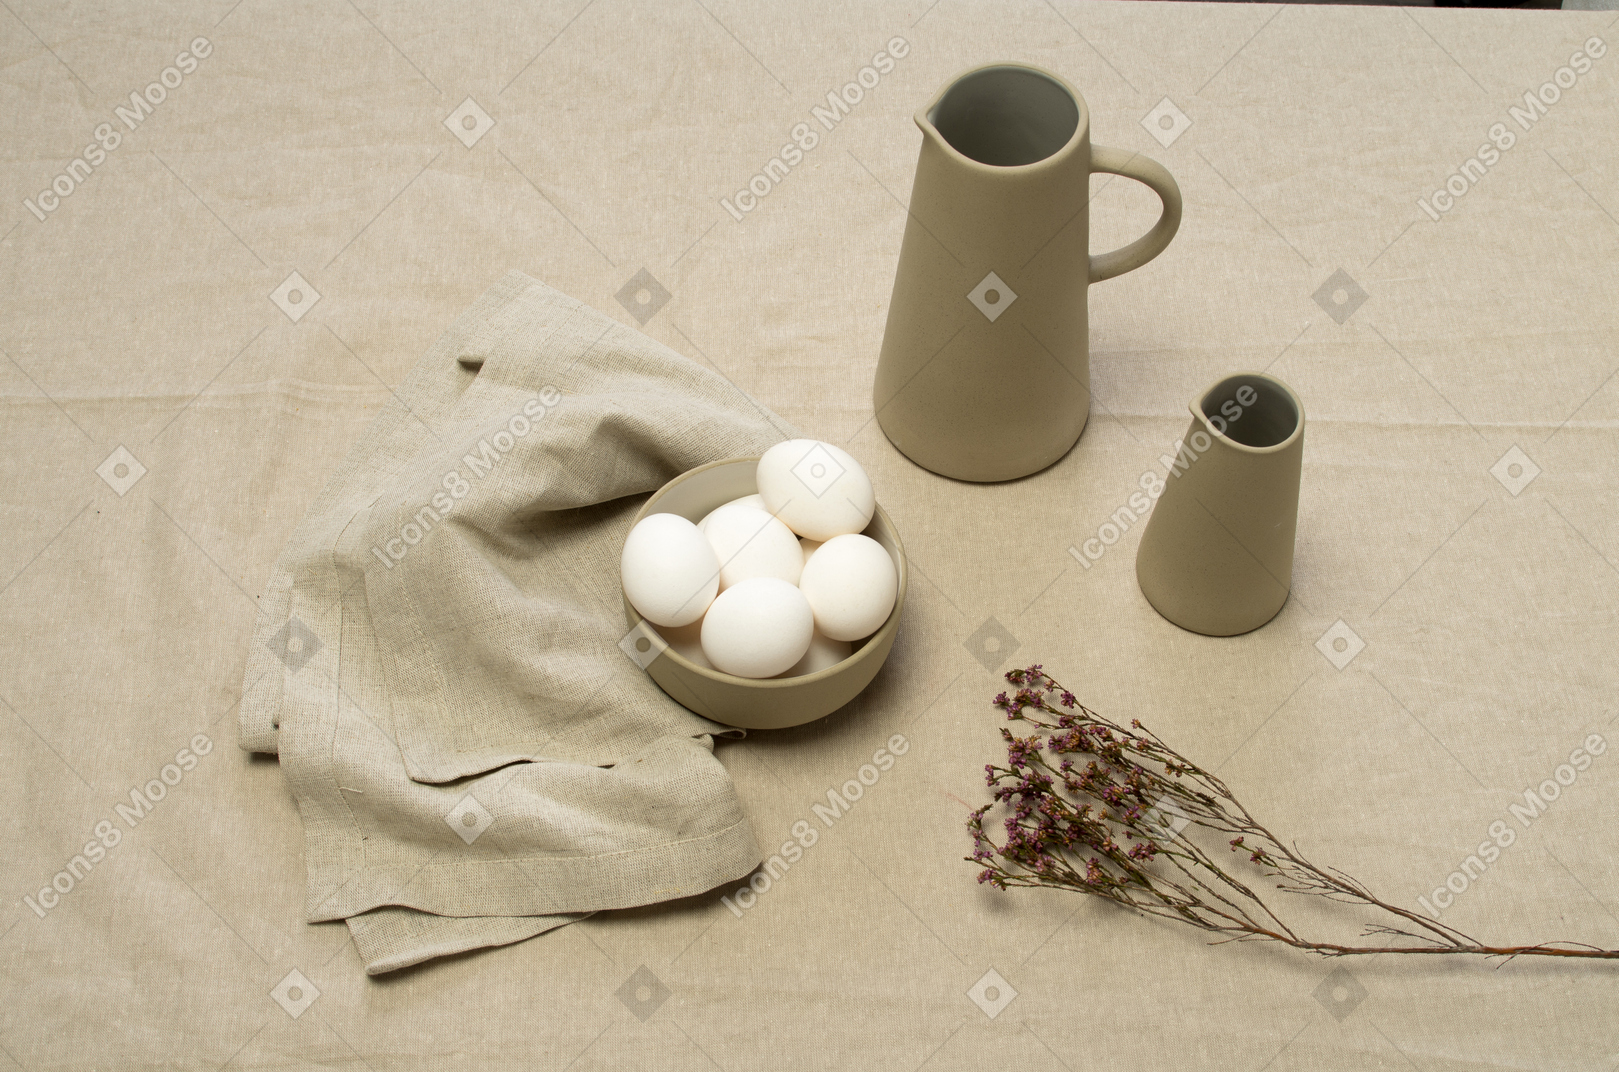 Un tazón de huevos de gallina y unos frascos sobre un mantel gris